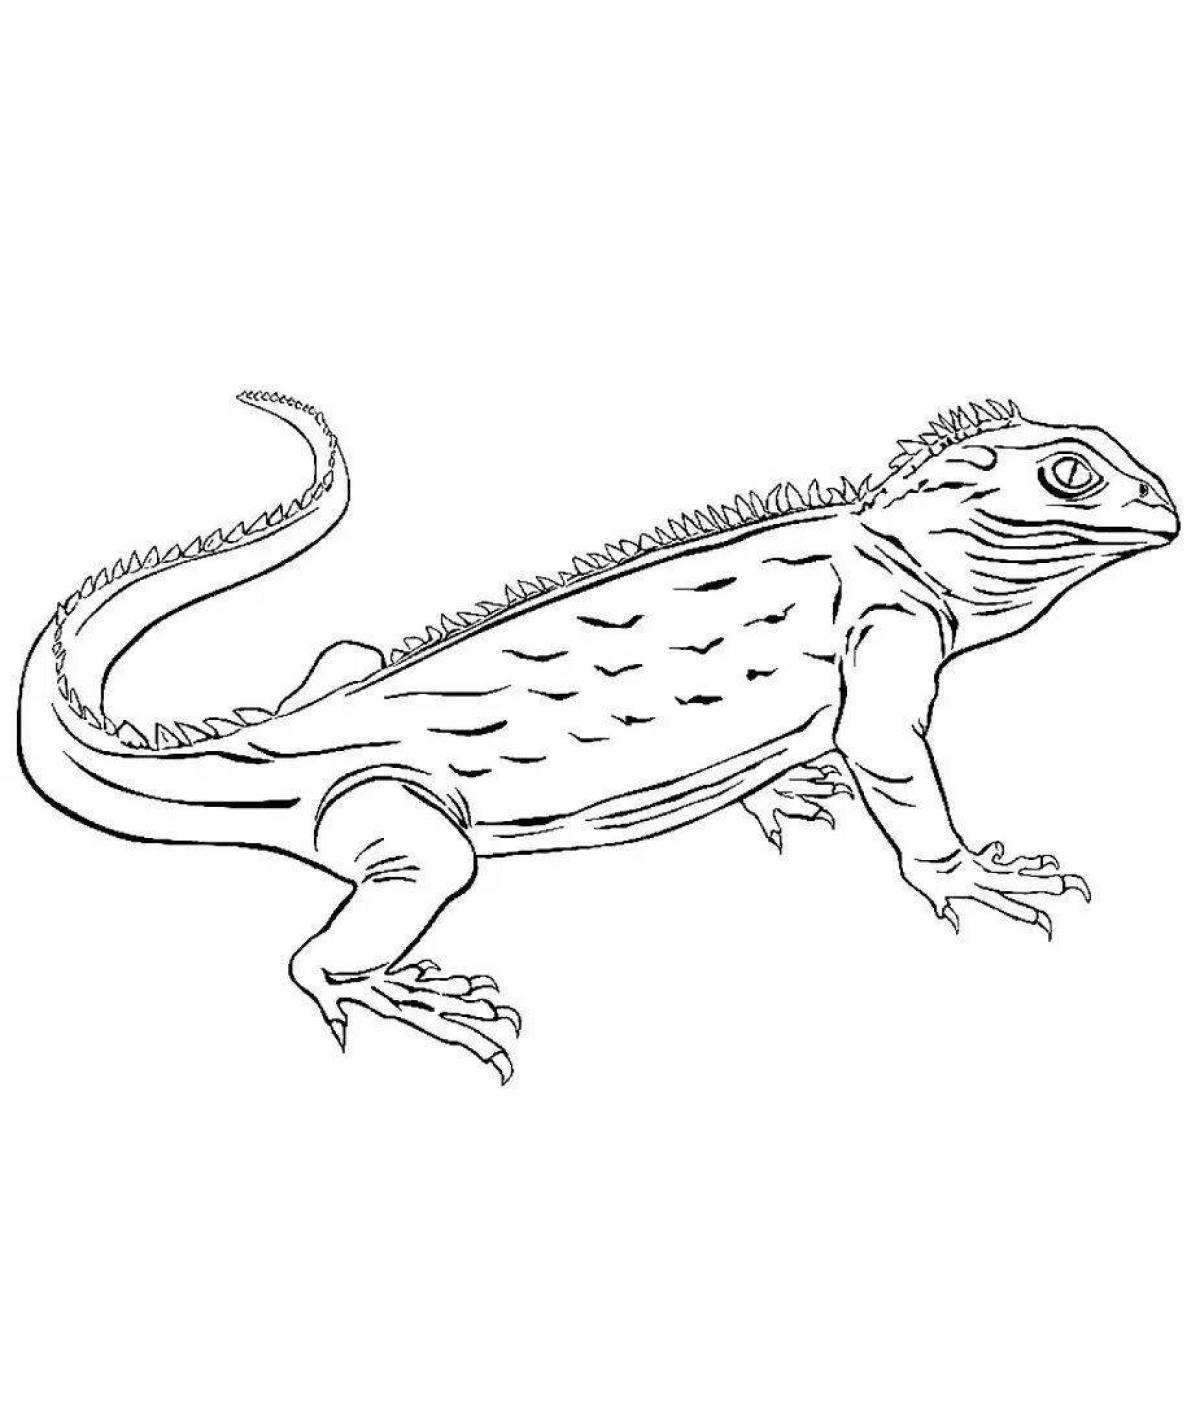 страница 6 | Страница раскрашивания рептилий Изображения – скачать бесплатно на Freepik